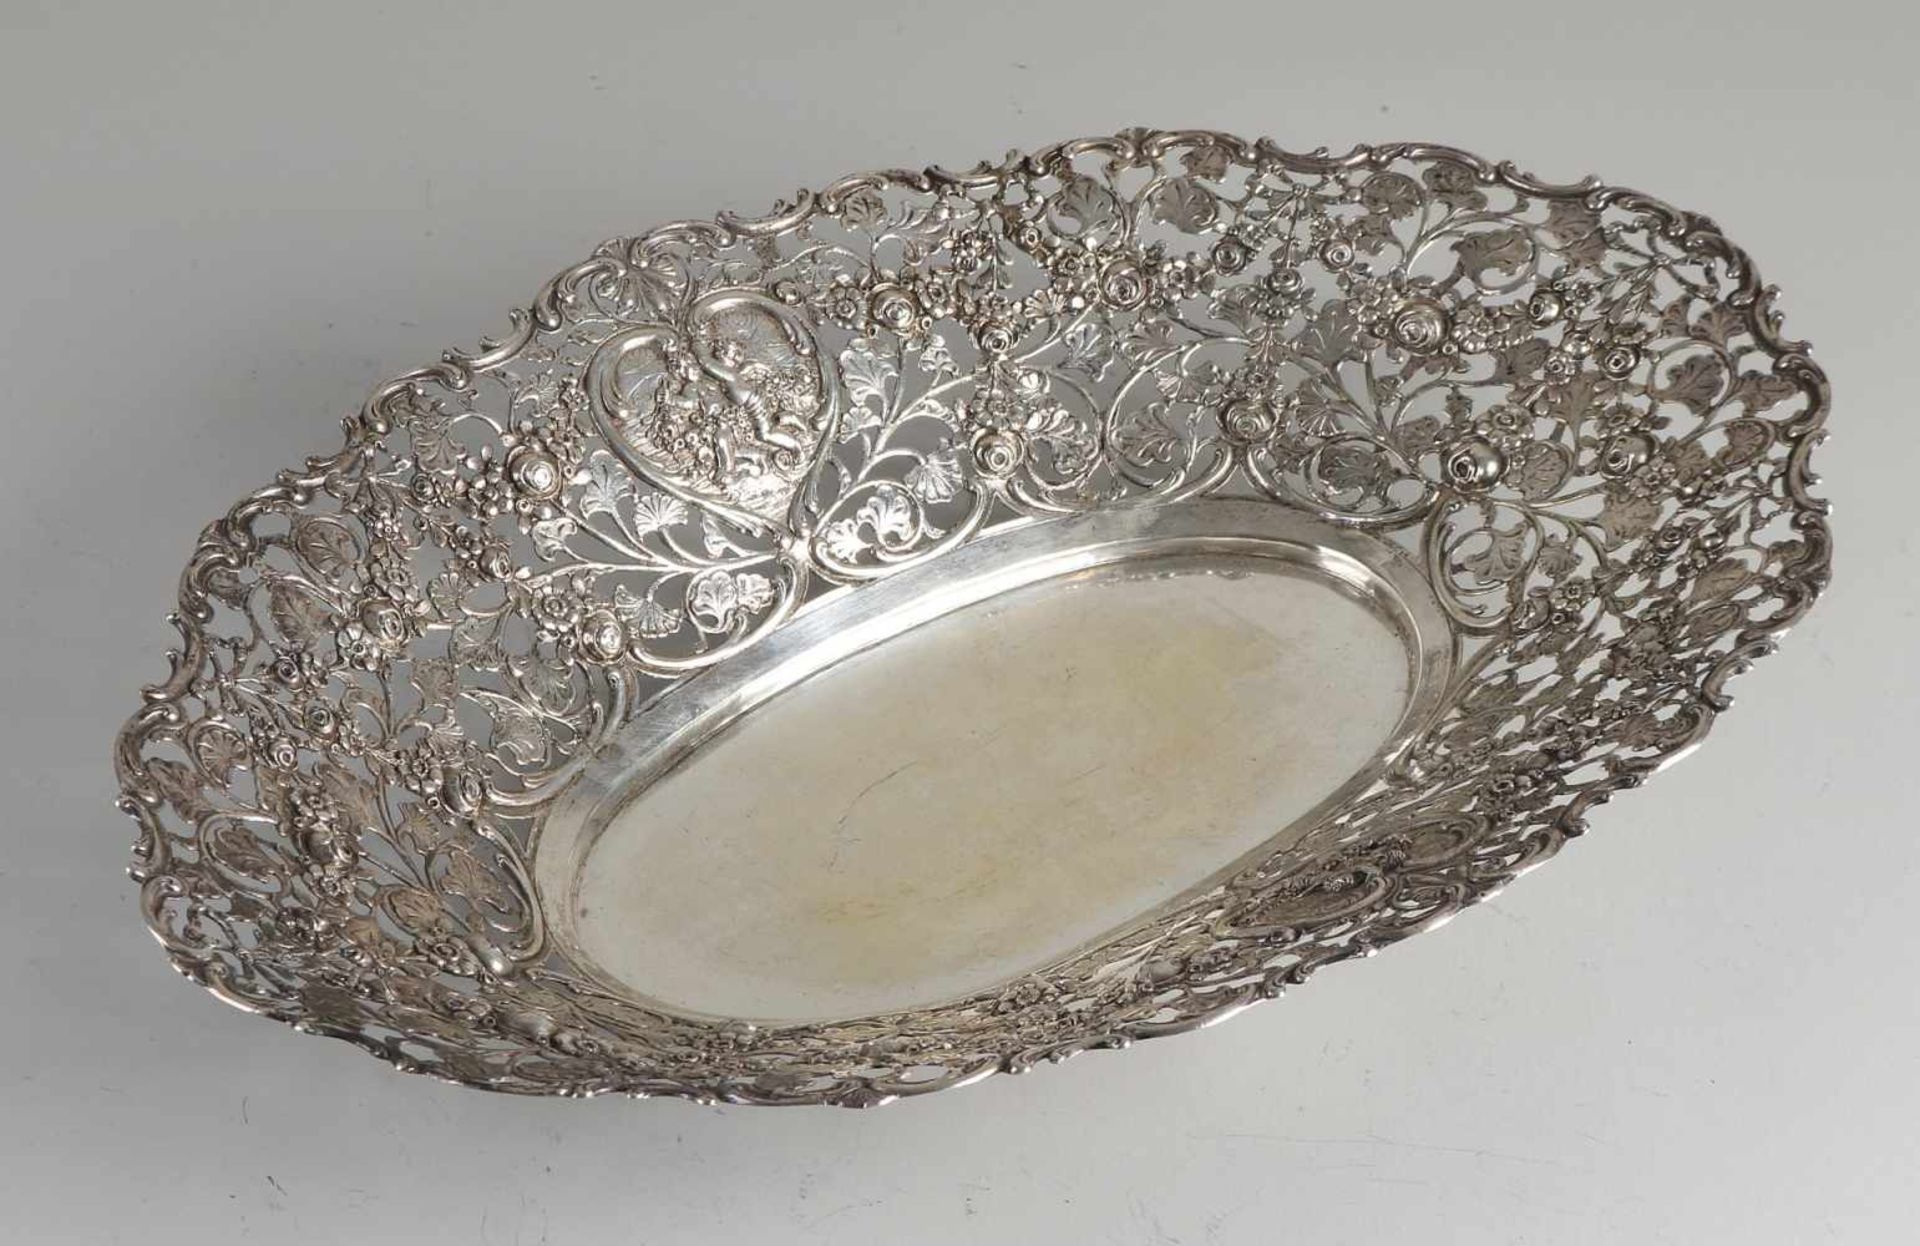 Silberne Schale, 800/000, durchbrochenes ovales Modell, verziert mit Blumendekor und herzförmigen - Image 2 of 2